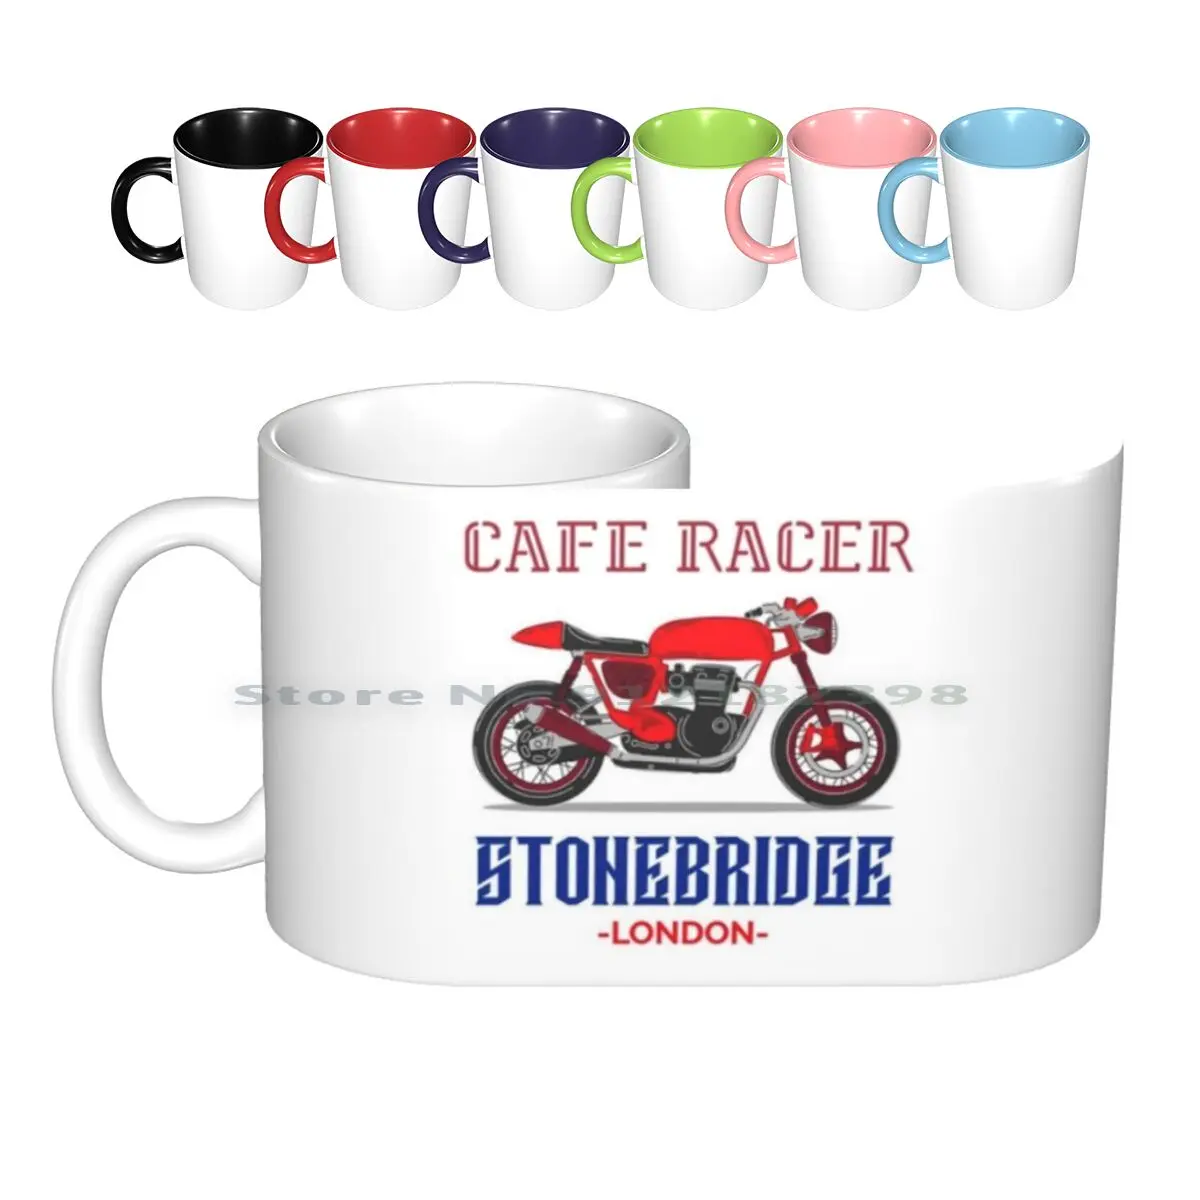 

Керамические кружки Cafe Racer, кофейные чашки, Кружка для молока и чая, Кружка для Кафе Racer, скоростной мотоцикл, скоростной двигатель, скоростно...